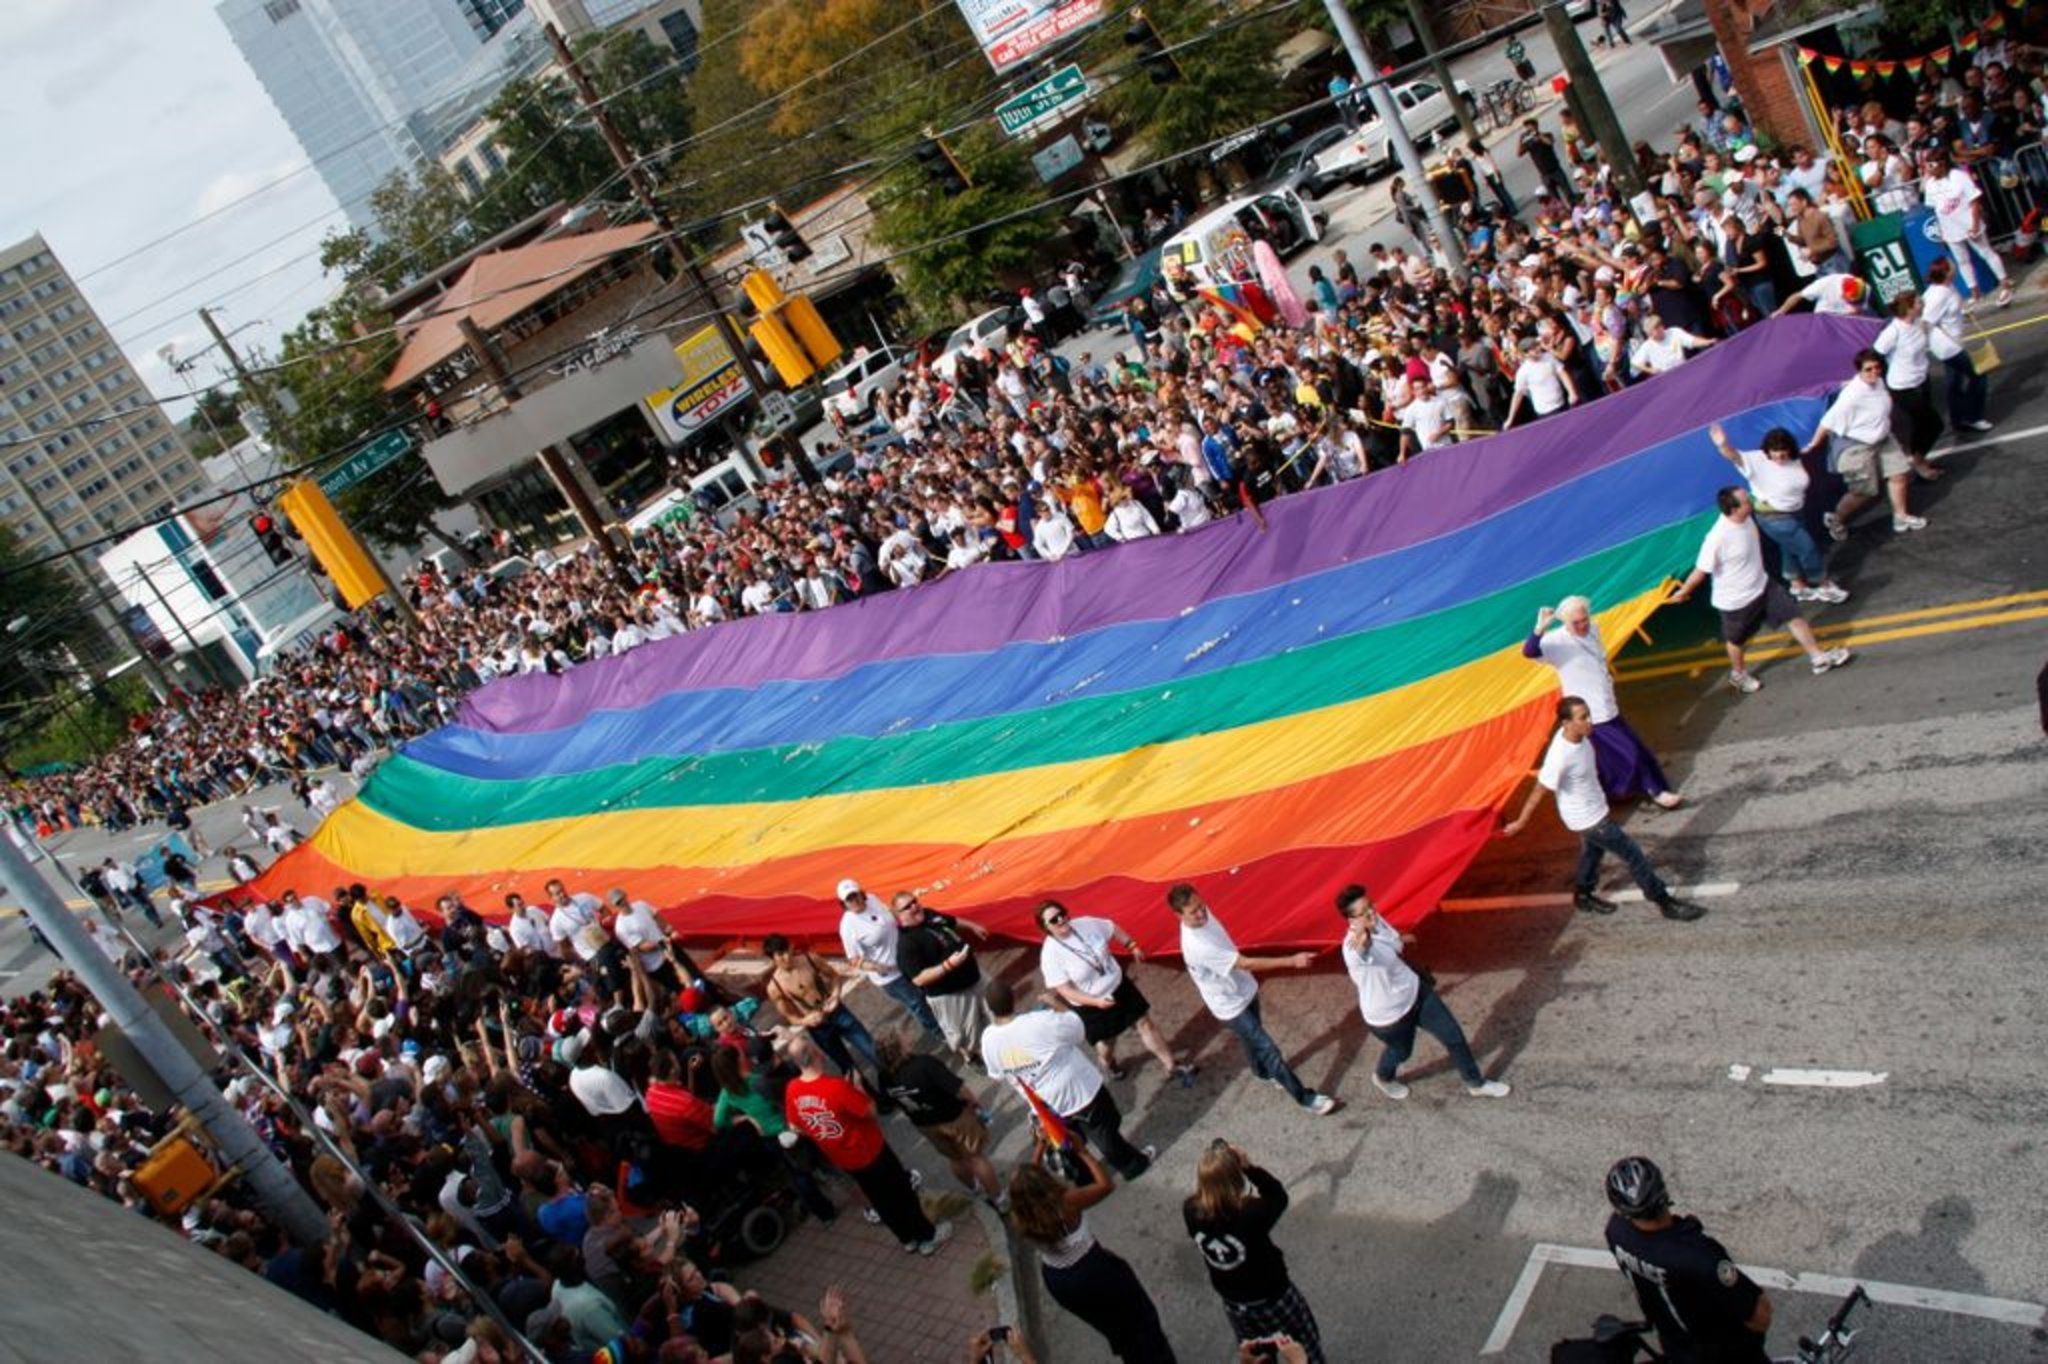 when is the gay pride parade in atlanta 2012